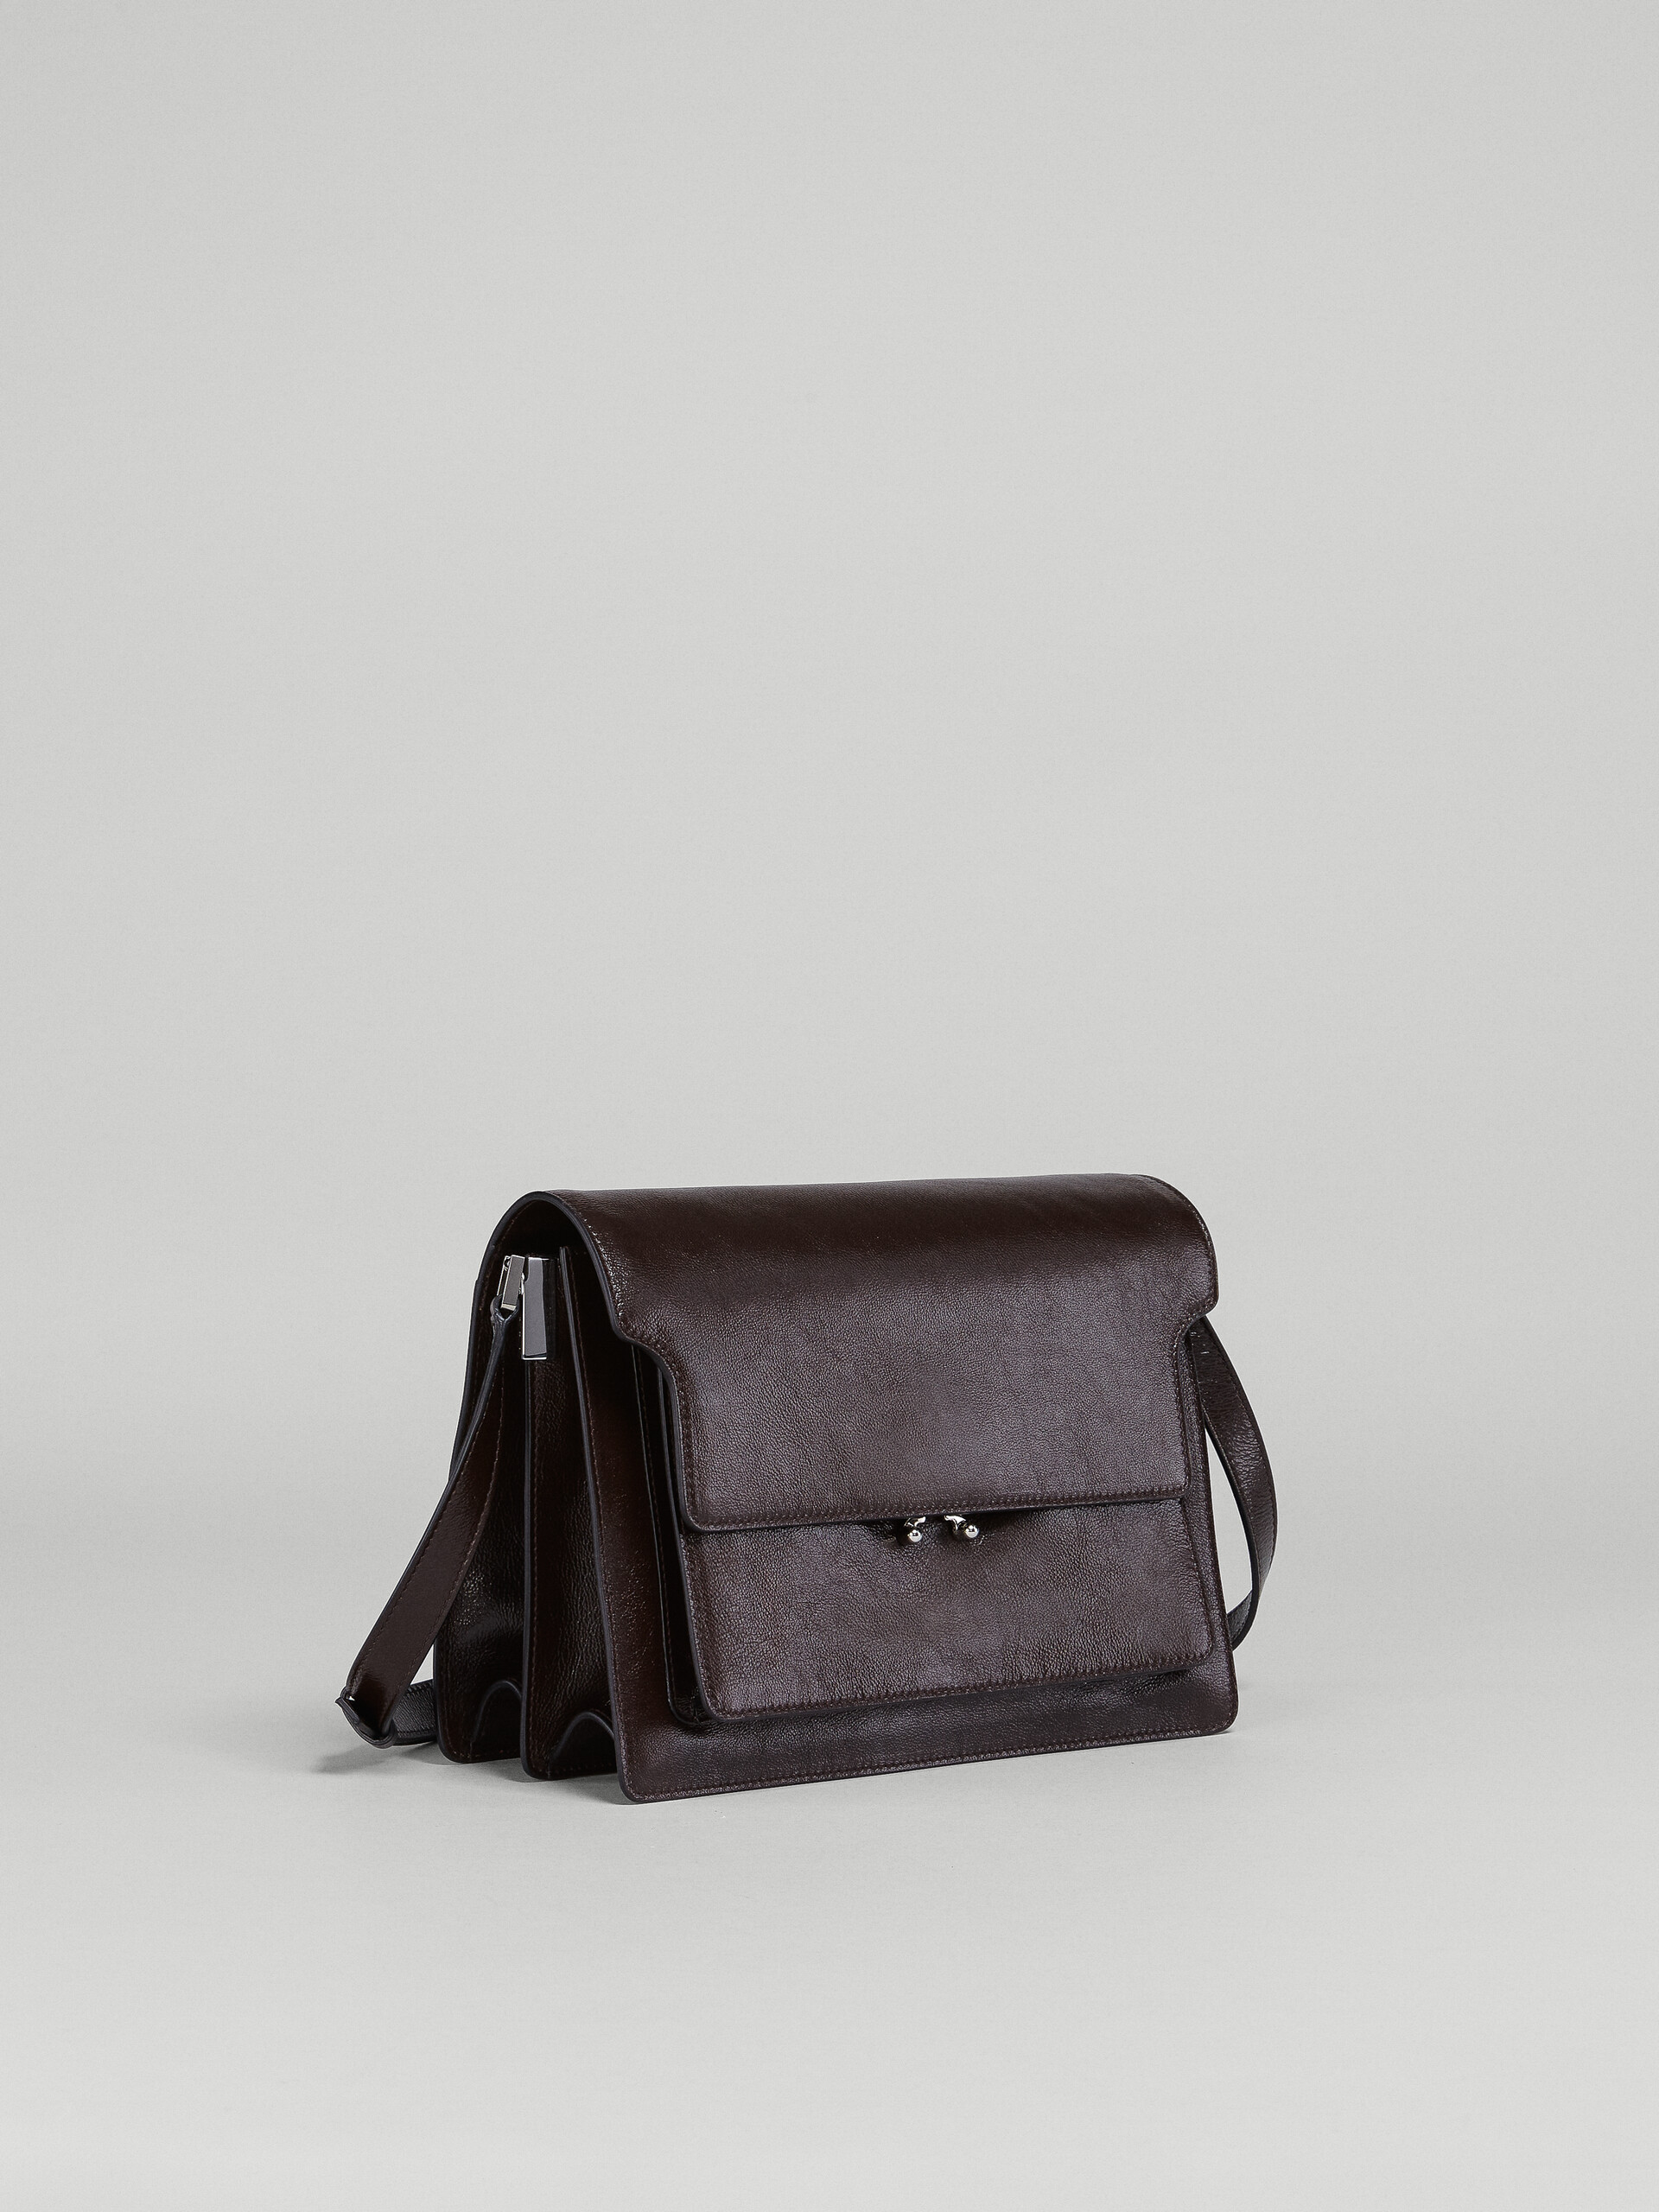 Trunk Soft Bag Grande in pelle nera - Borse a spalla - Image 5